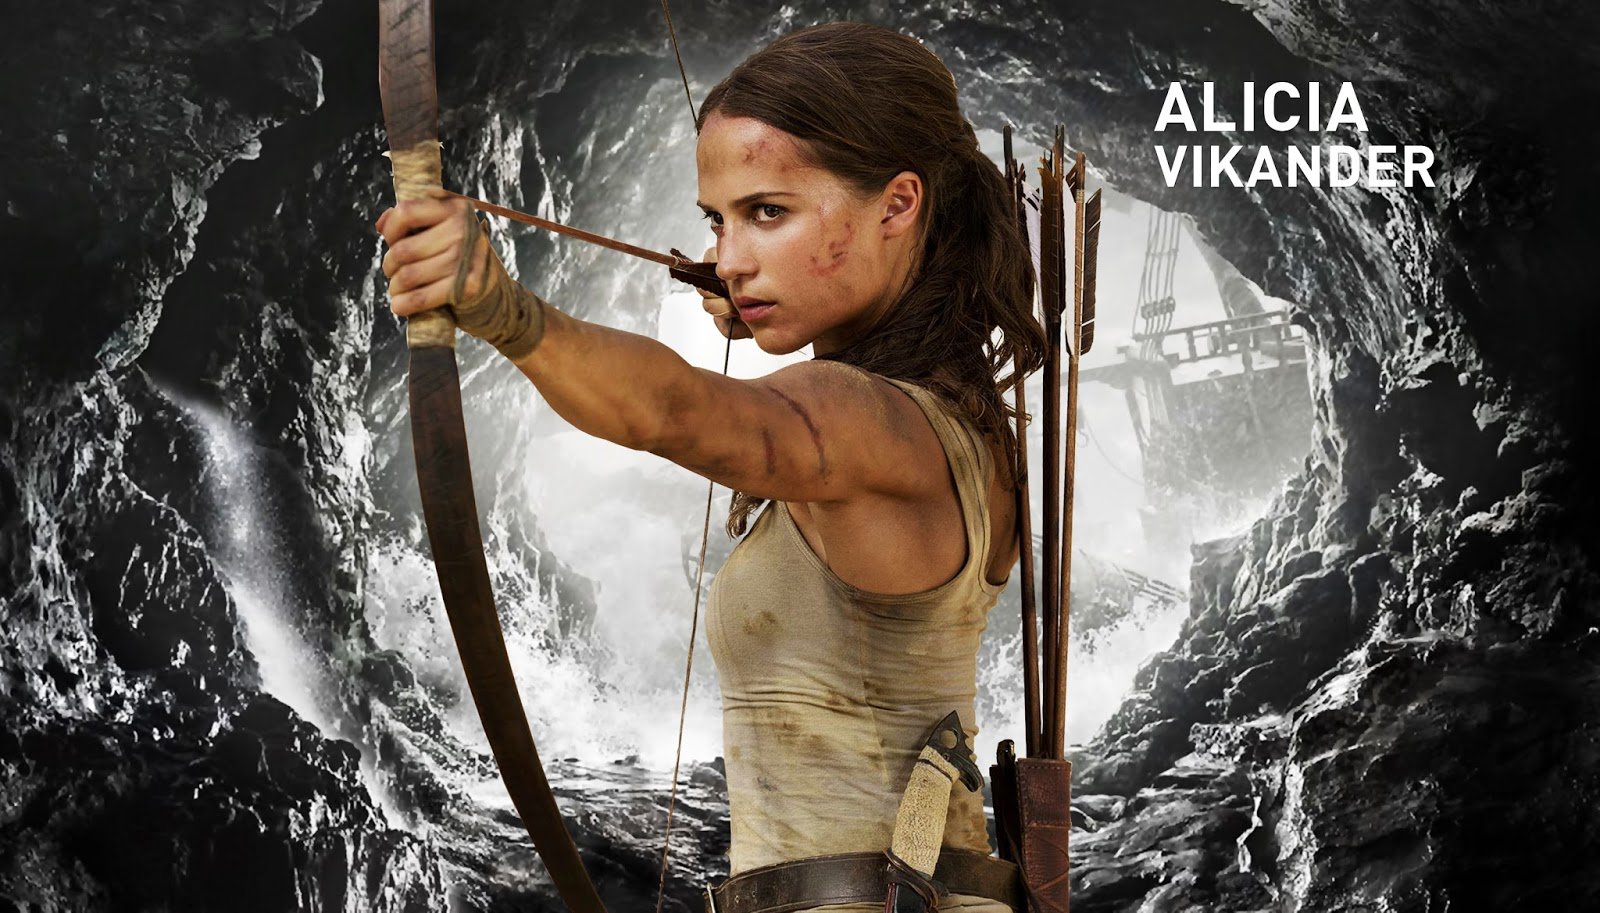 IMDb de Alicia Vikander atualizado com segundo filme para 2021! - LARA CROFT  PT: Fansite de Tomb Raider oficializado e premiado